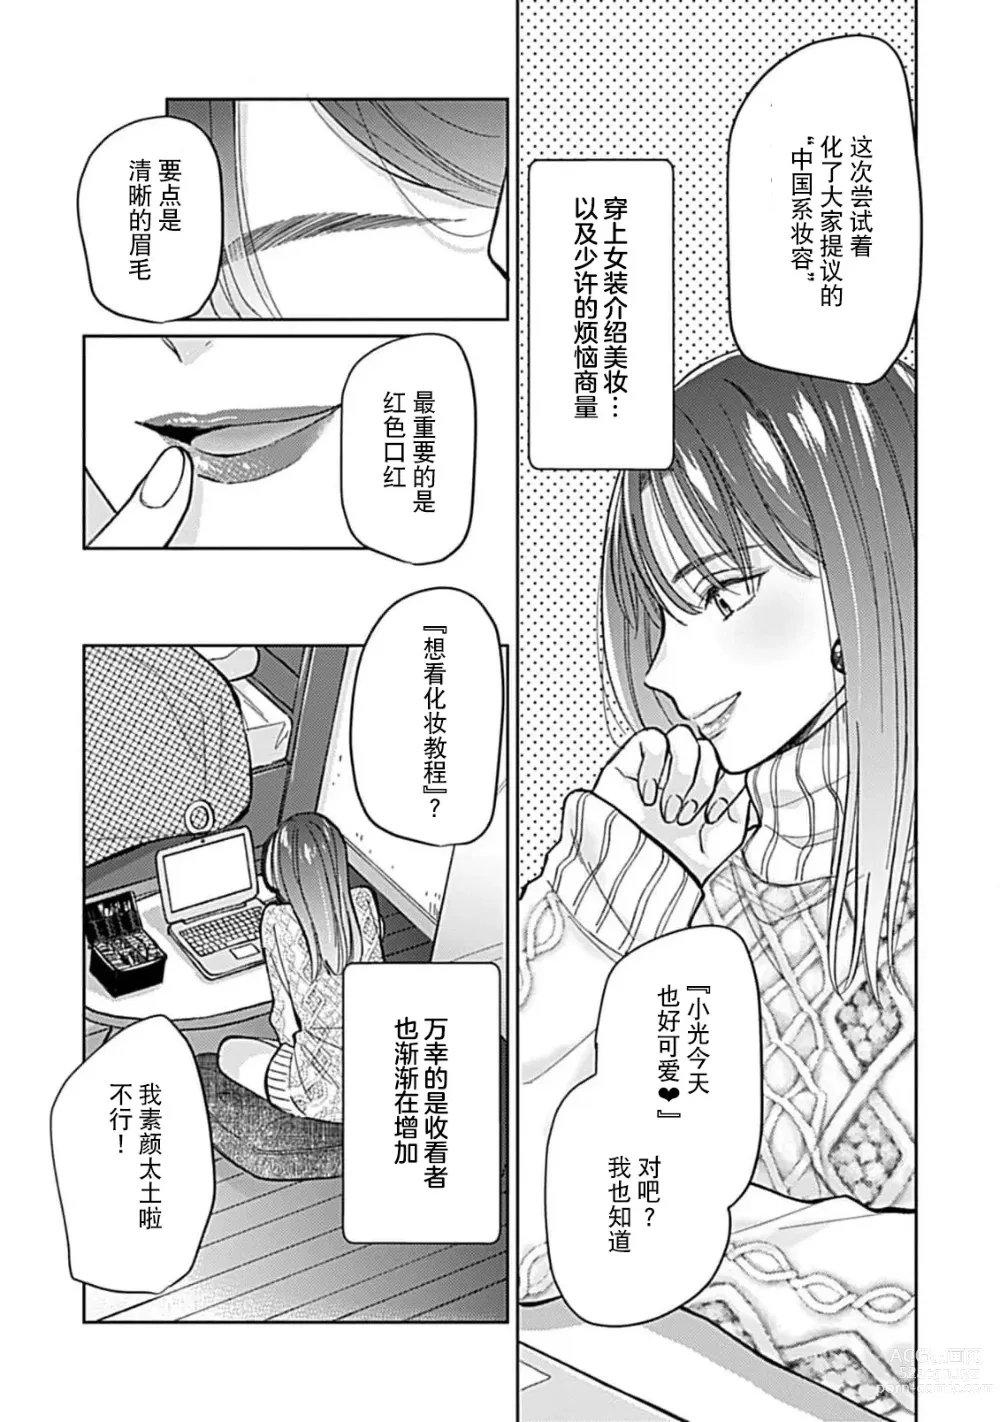 Page 7 of manga 恋情与秘密难以映照 1